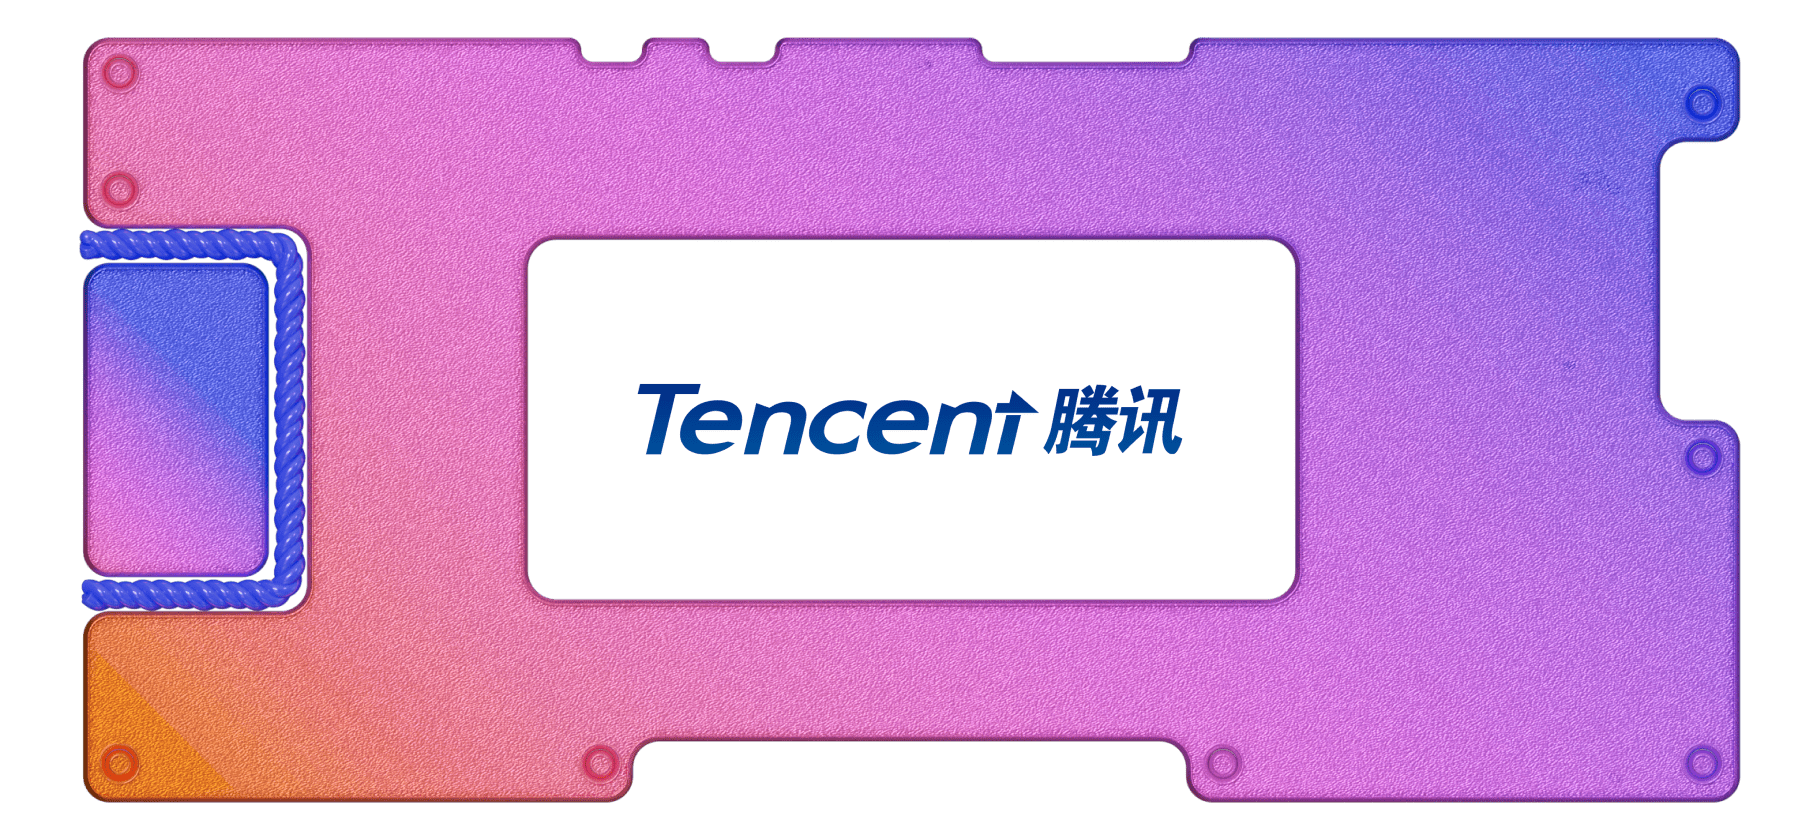 WeChat и антиутопия: инвестируем в Tencent